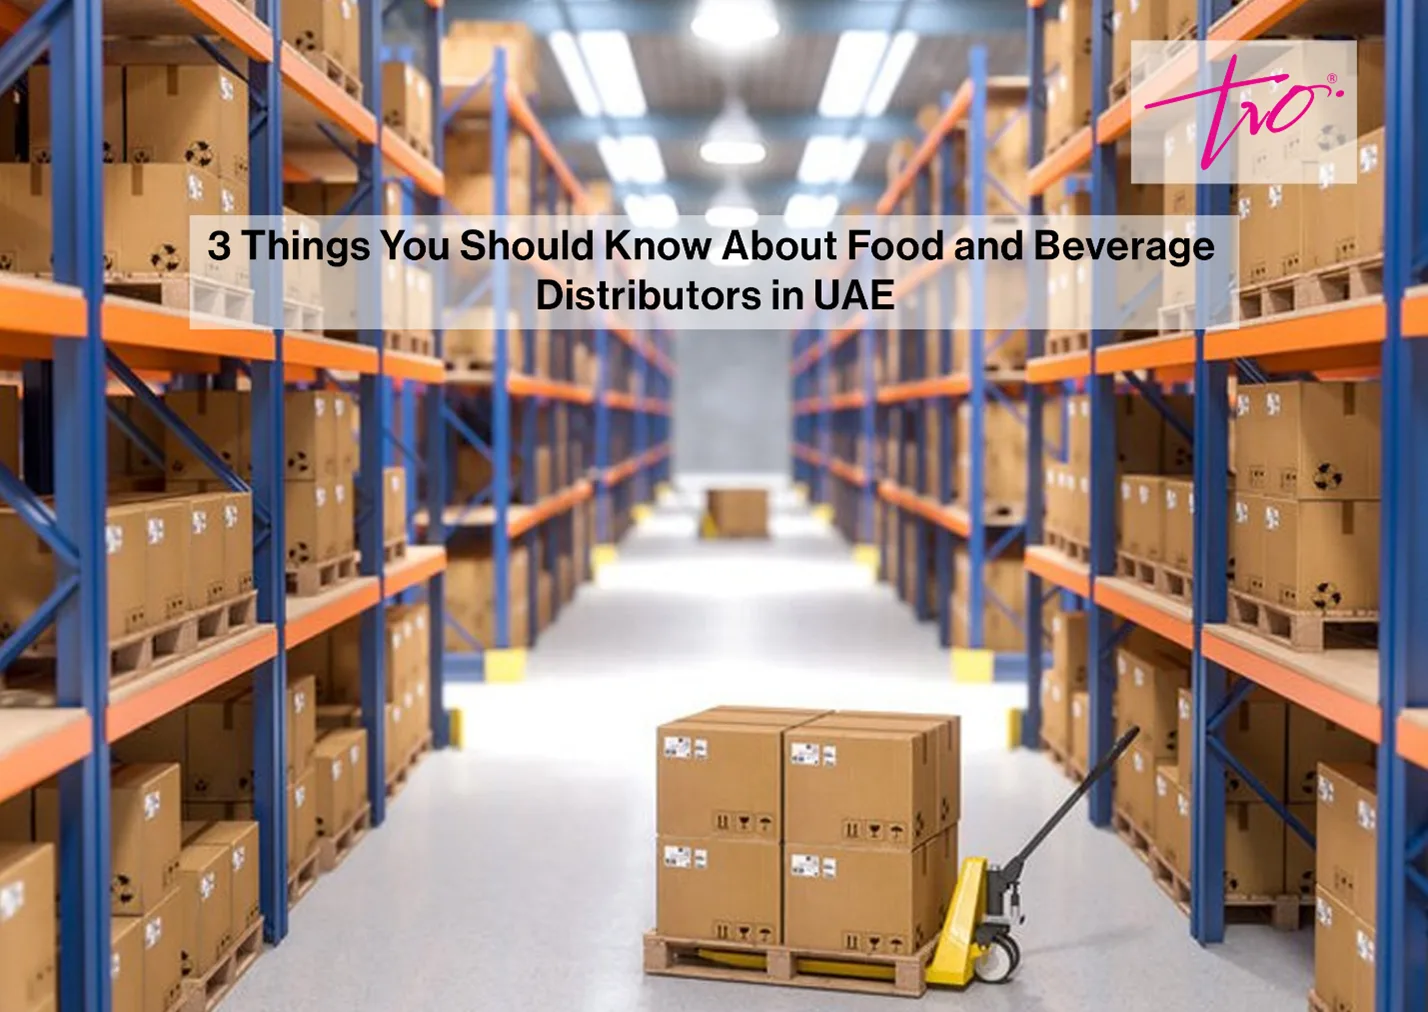 3 أشياء يجب أن تعرفها عن موزعي الأغذية والمشروبات في الإمارات العربية المتحدة